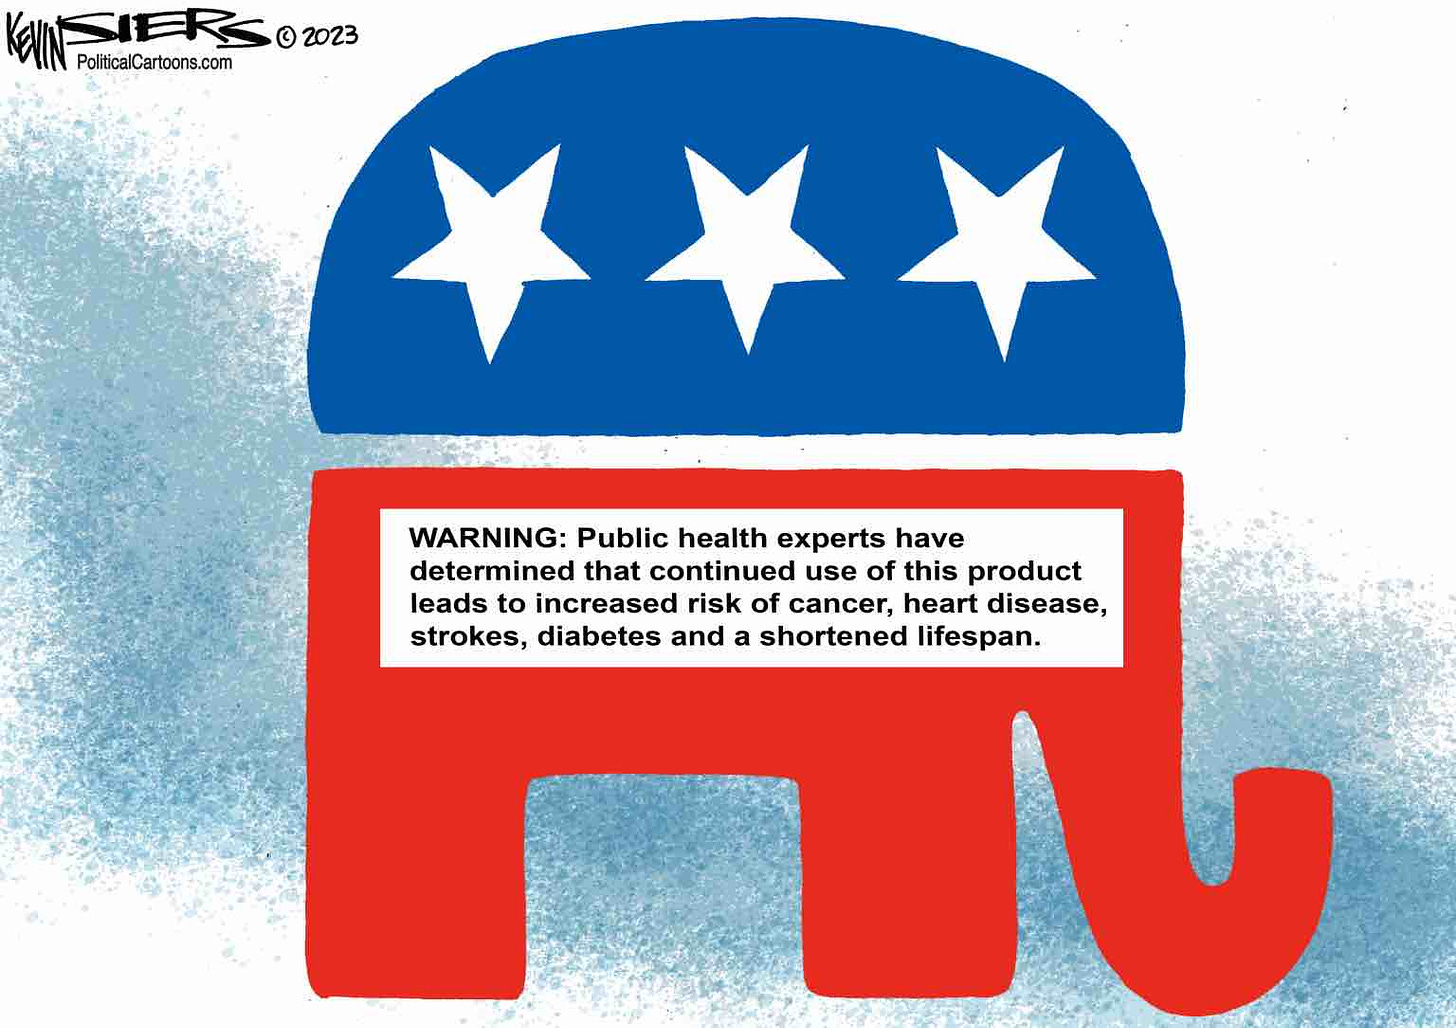 MAGA Republicans are hazardous to your health